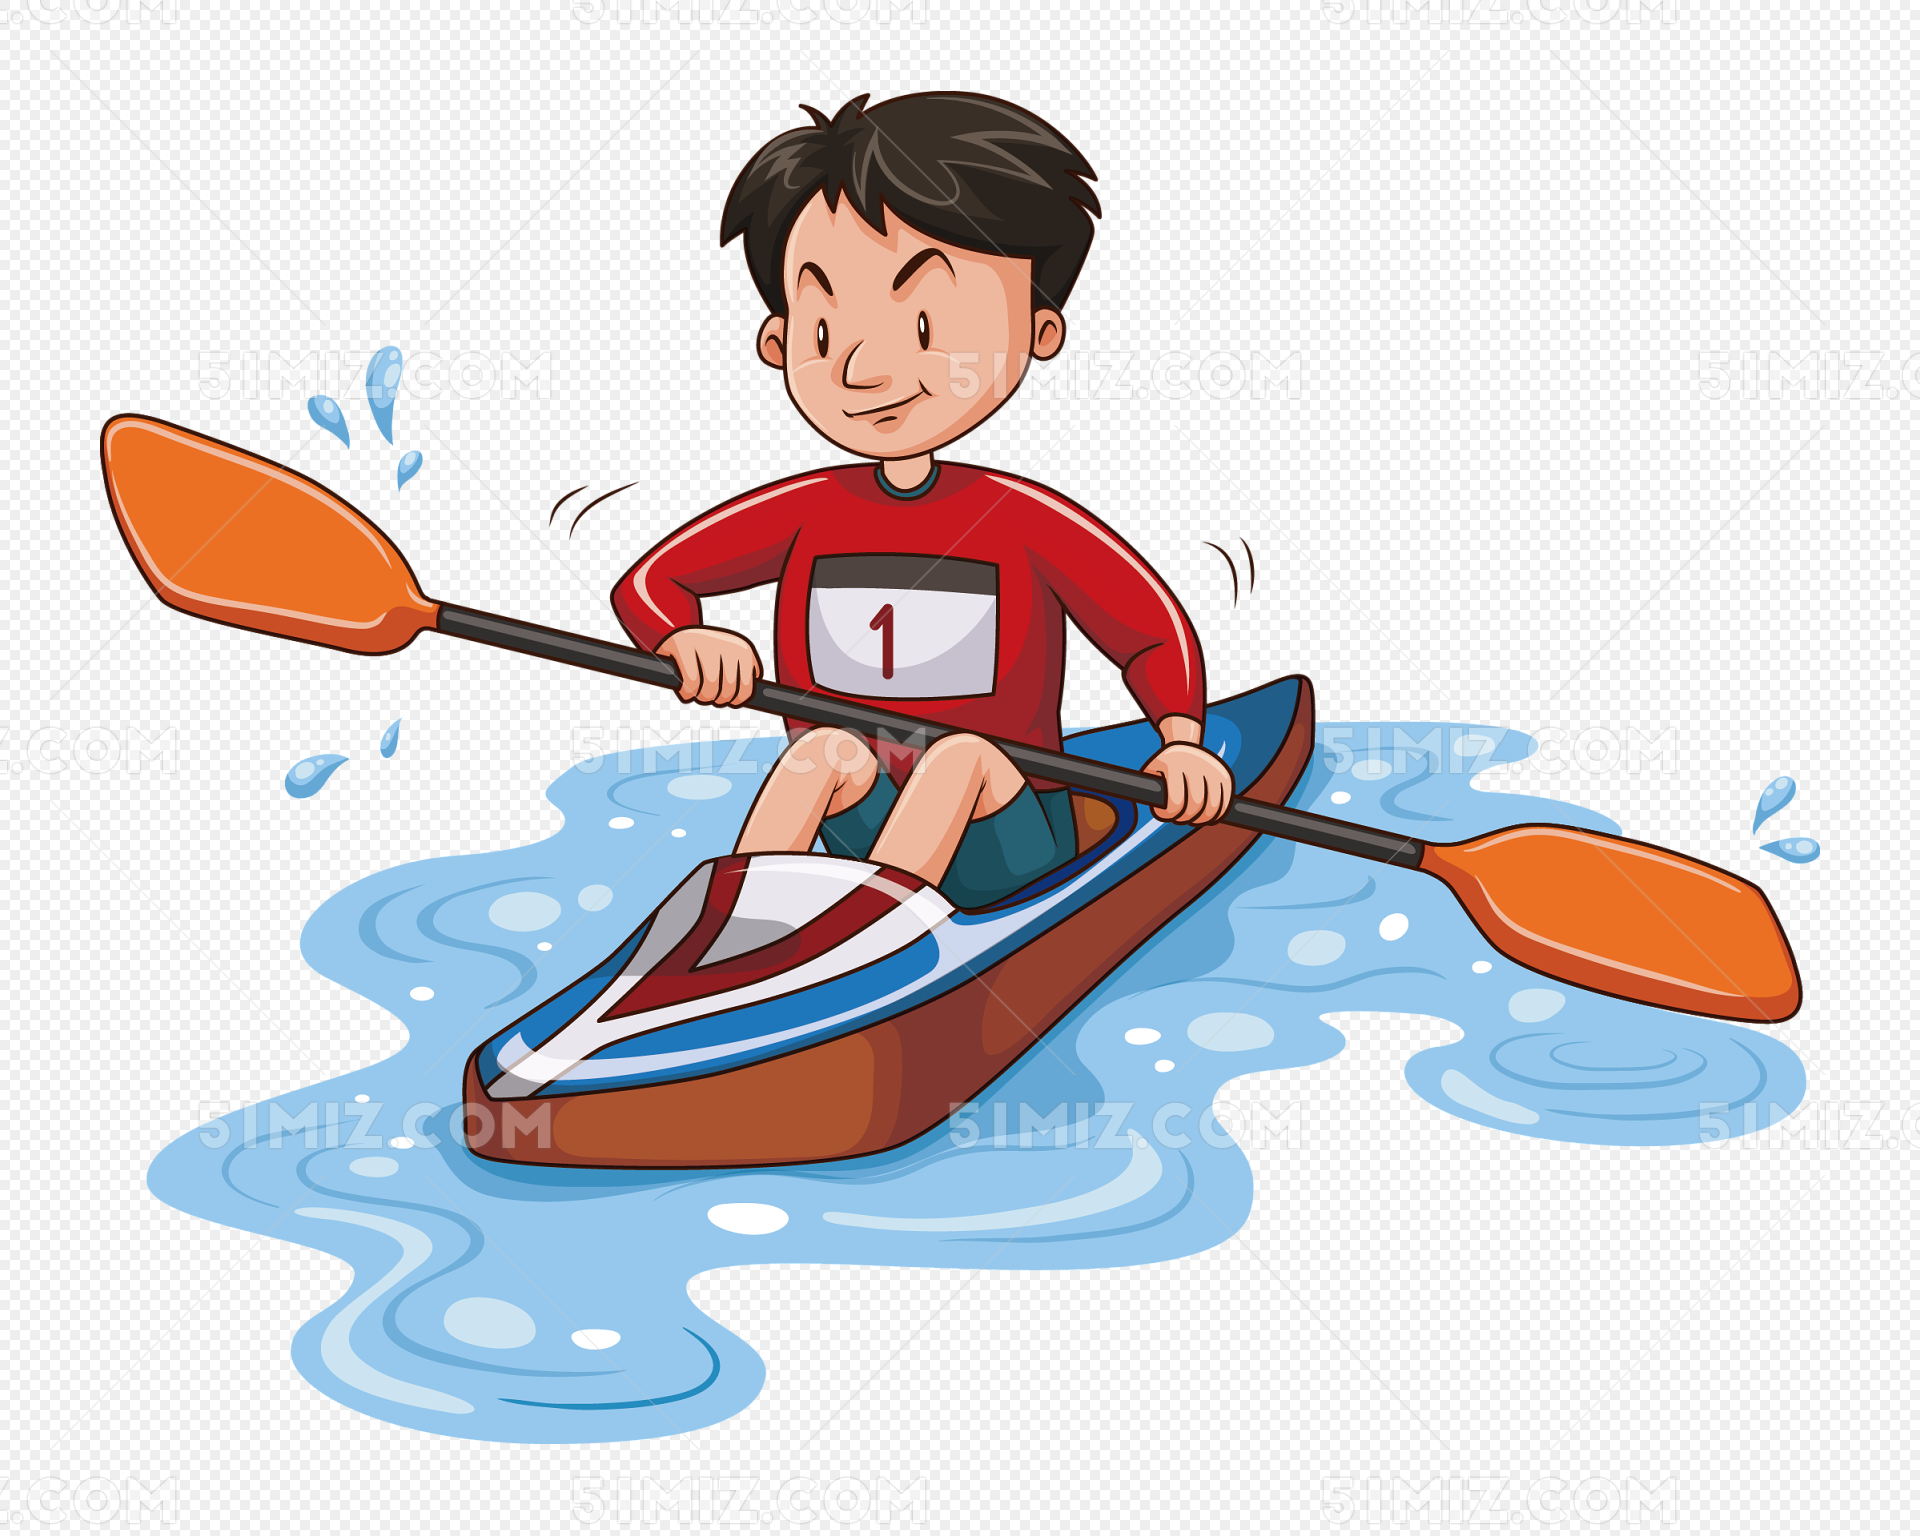 划船 划船比赛 - Pixabay上的免费照片 - Pixabay